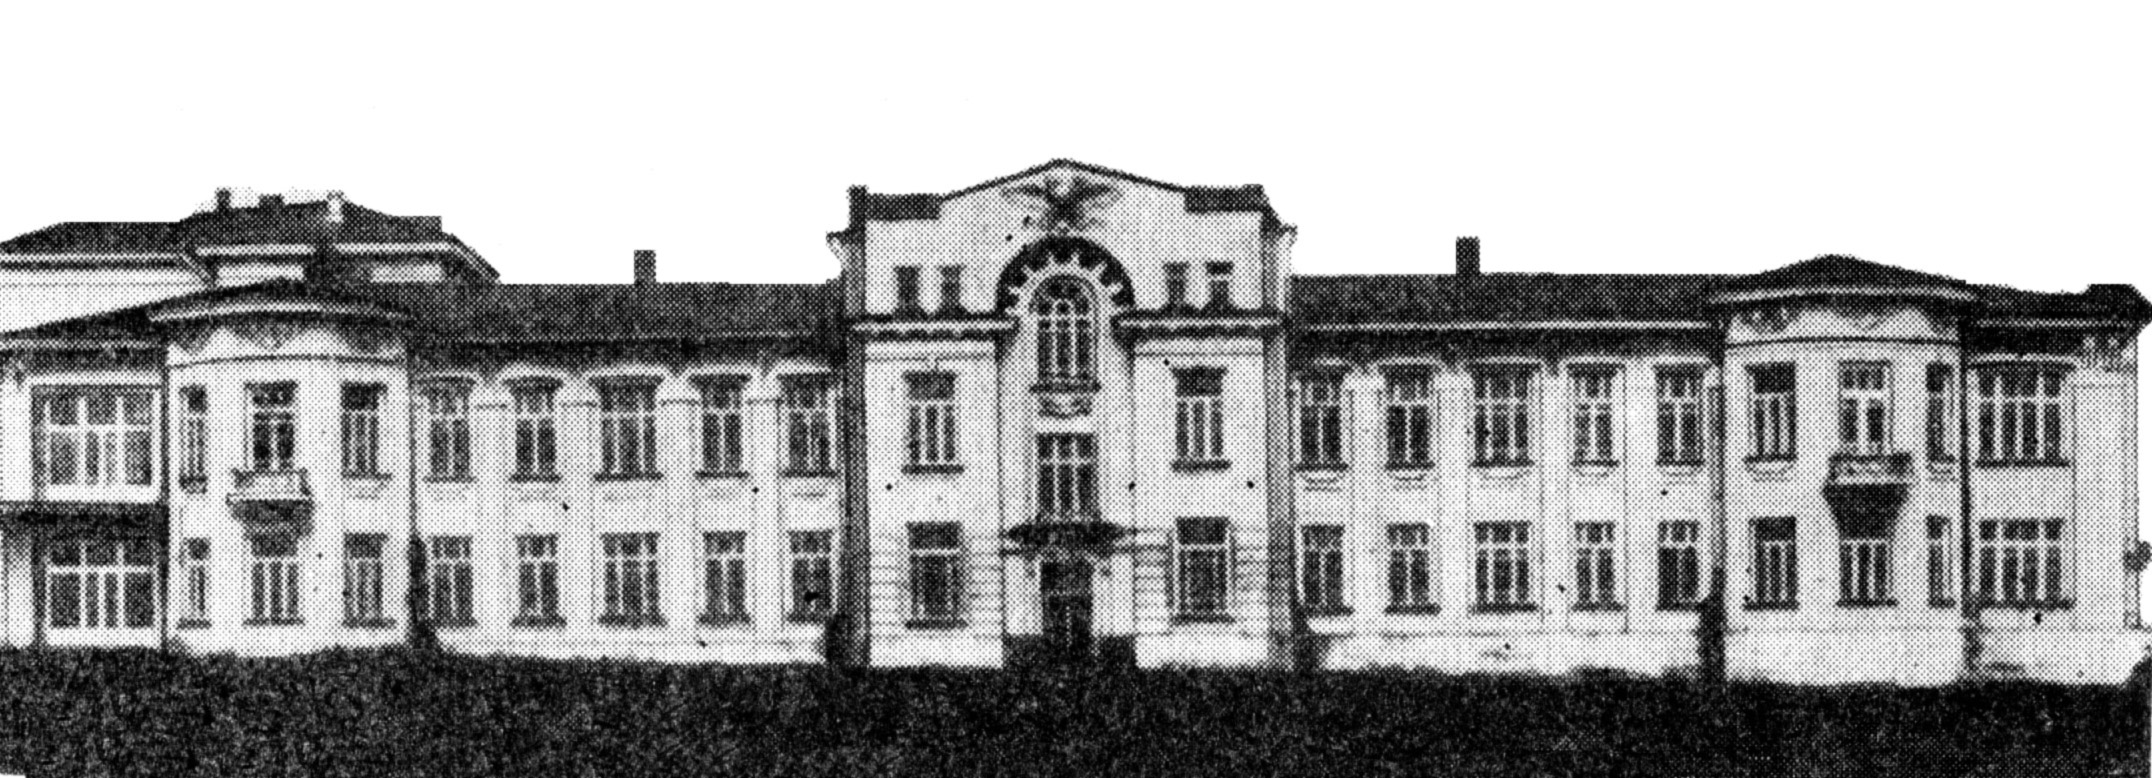 3 Советская больница Саратов